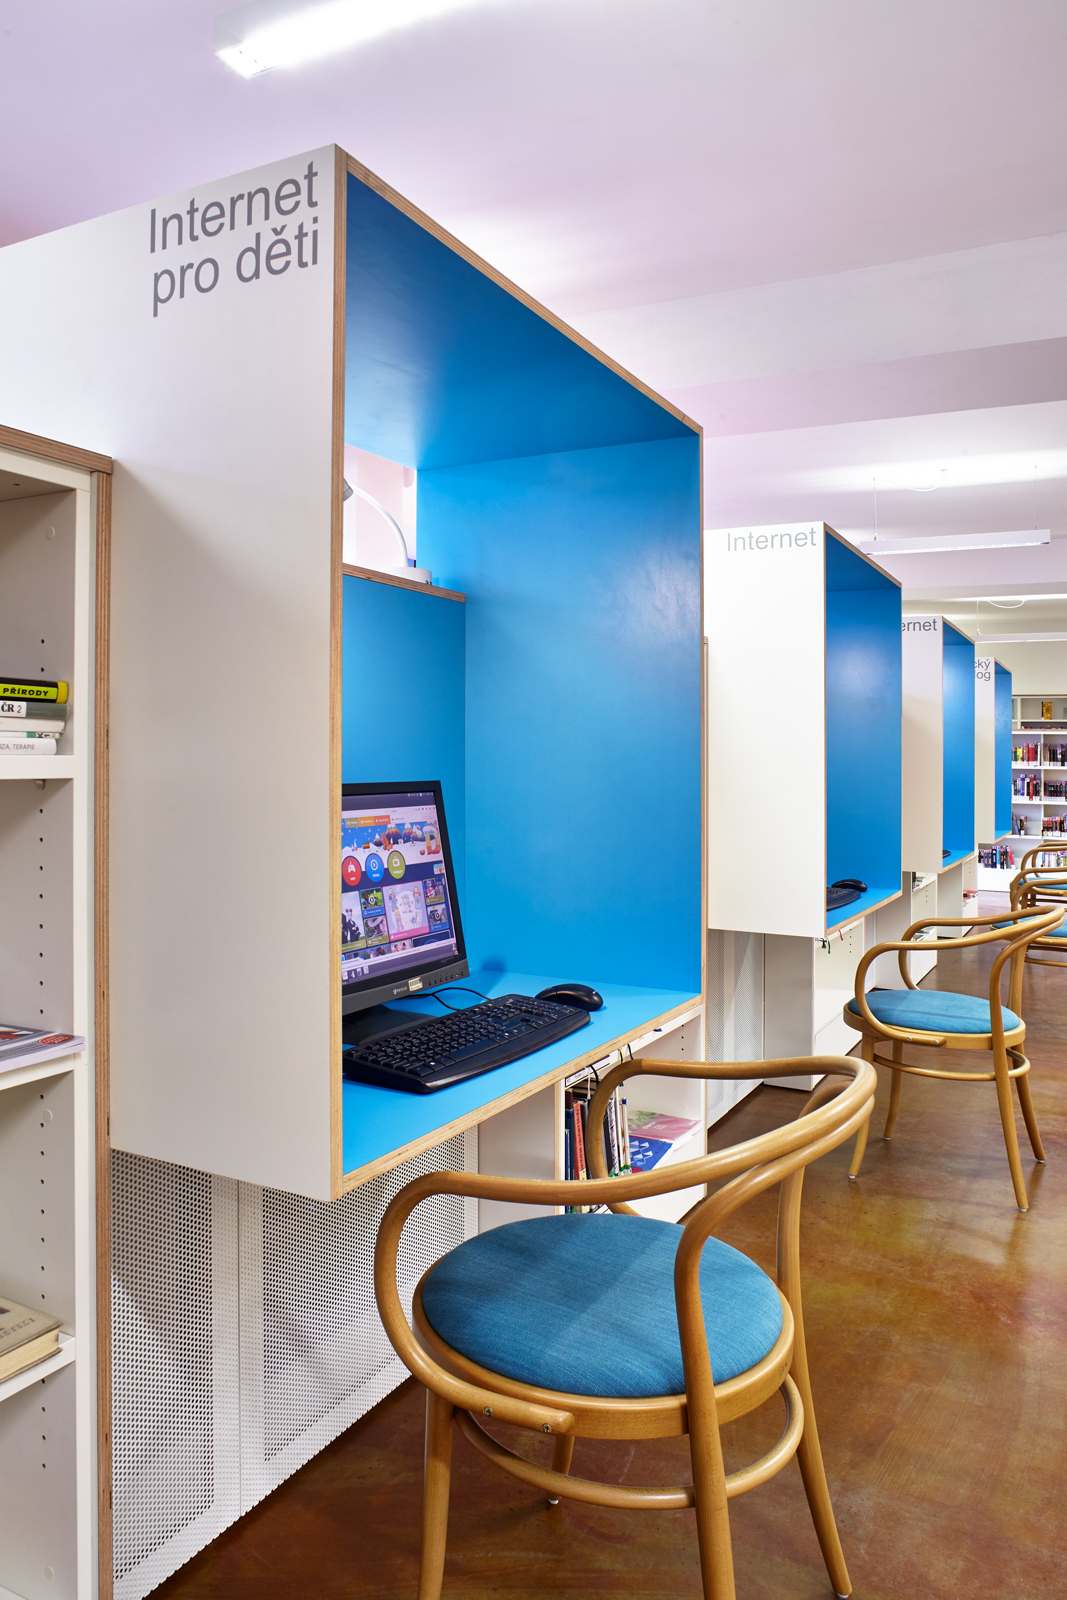 Naproti stolům knihovníkům jsou modré internetové boxy, které zároveň tvoří záda velké pohovce. foto: Andrea Thiel Lhotáková